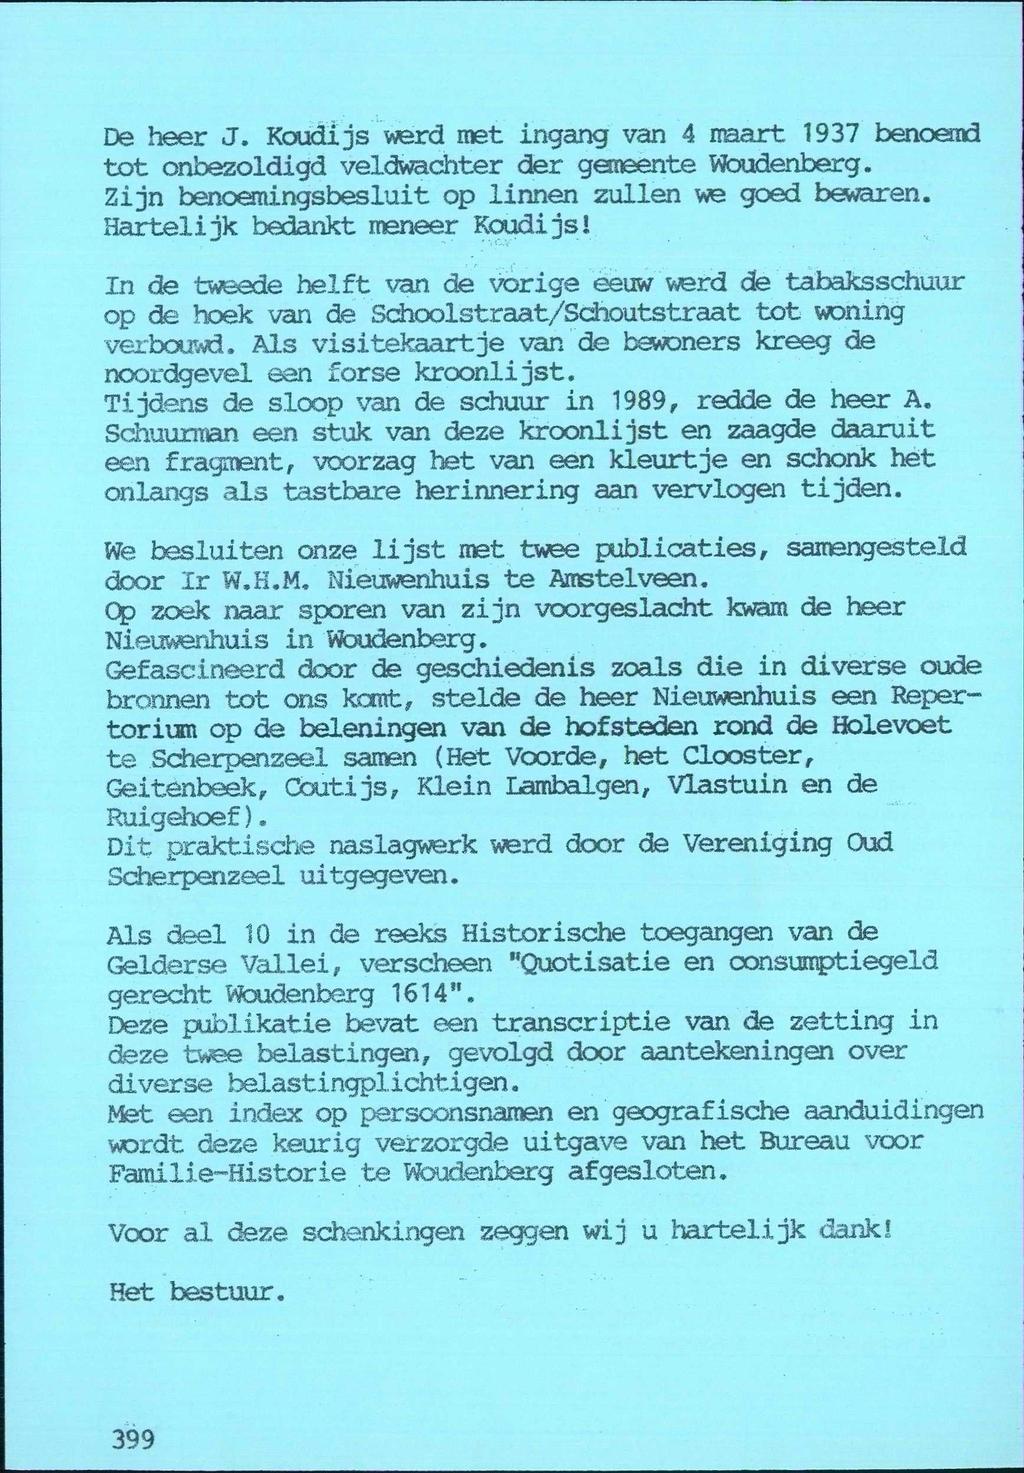 De heer J. Koudijs werd met ingang van 4 naart 1937 benoemd tot onbezoldigd veldwachter der gemeente Woudenberg. Zijn benoemingsbesluit op linnen zullen we goed bewaren.